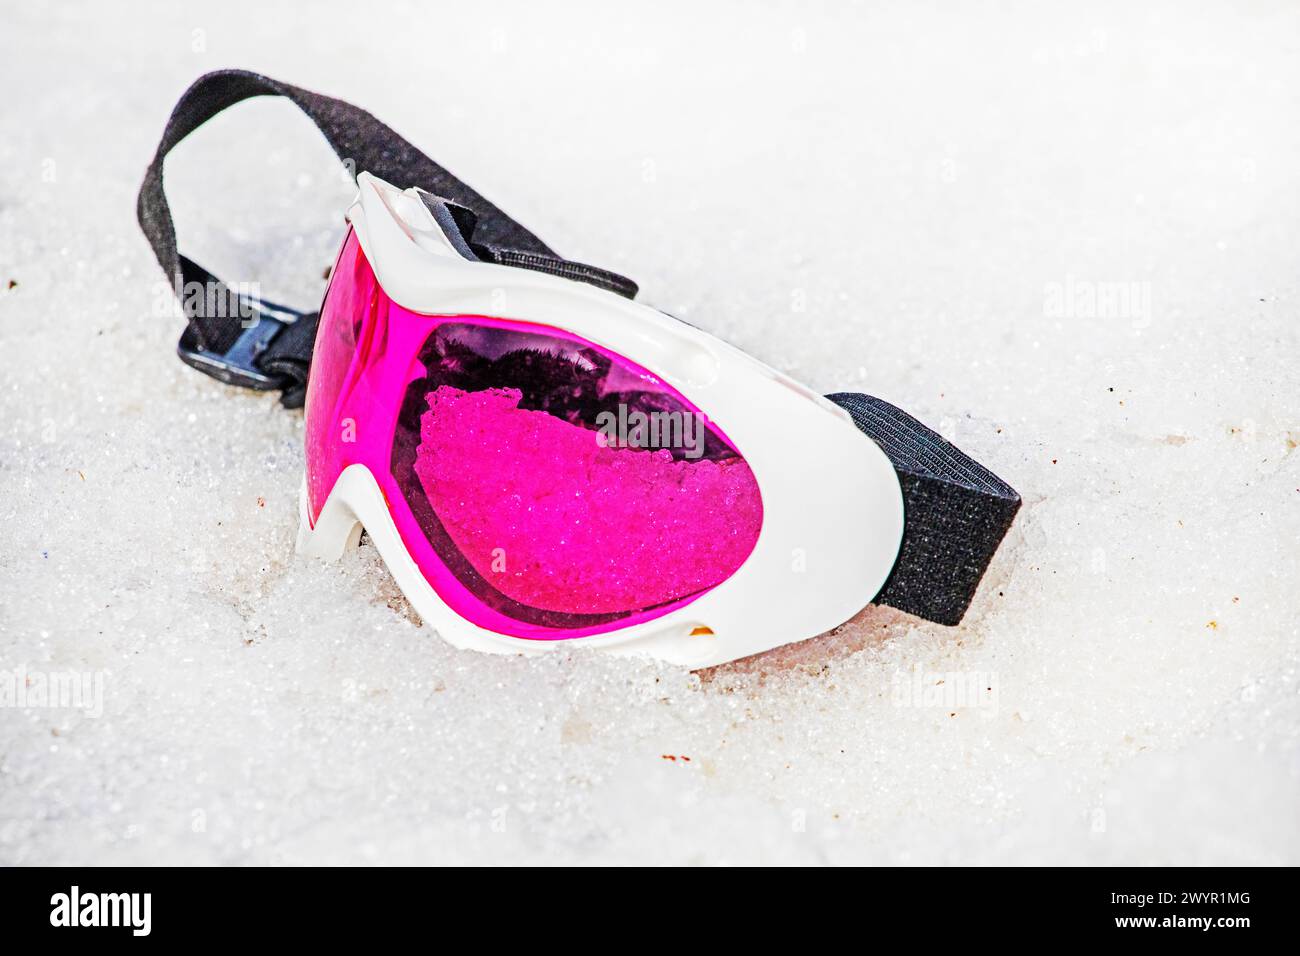 Die pinkfarbene Liegemaske liegt an einem sonnigen Tag auf einem nassen, schneebedeckten Hang. Winterschneesaison. Aktivurlaub mit Familie Stockfoto